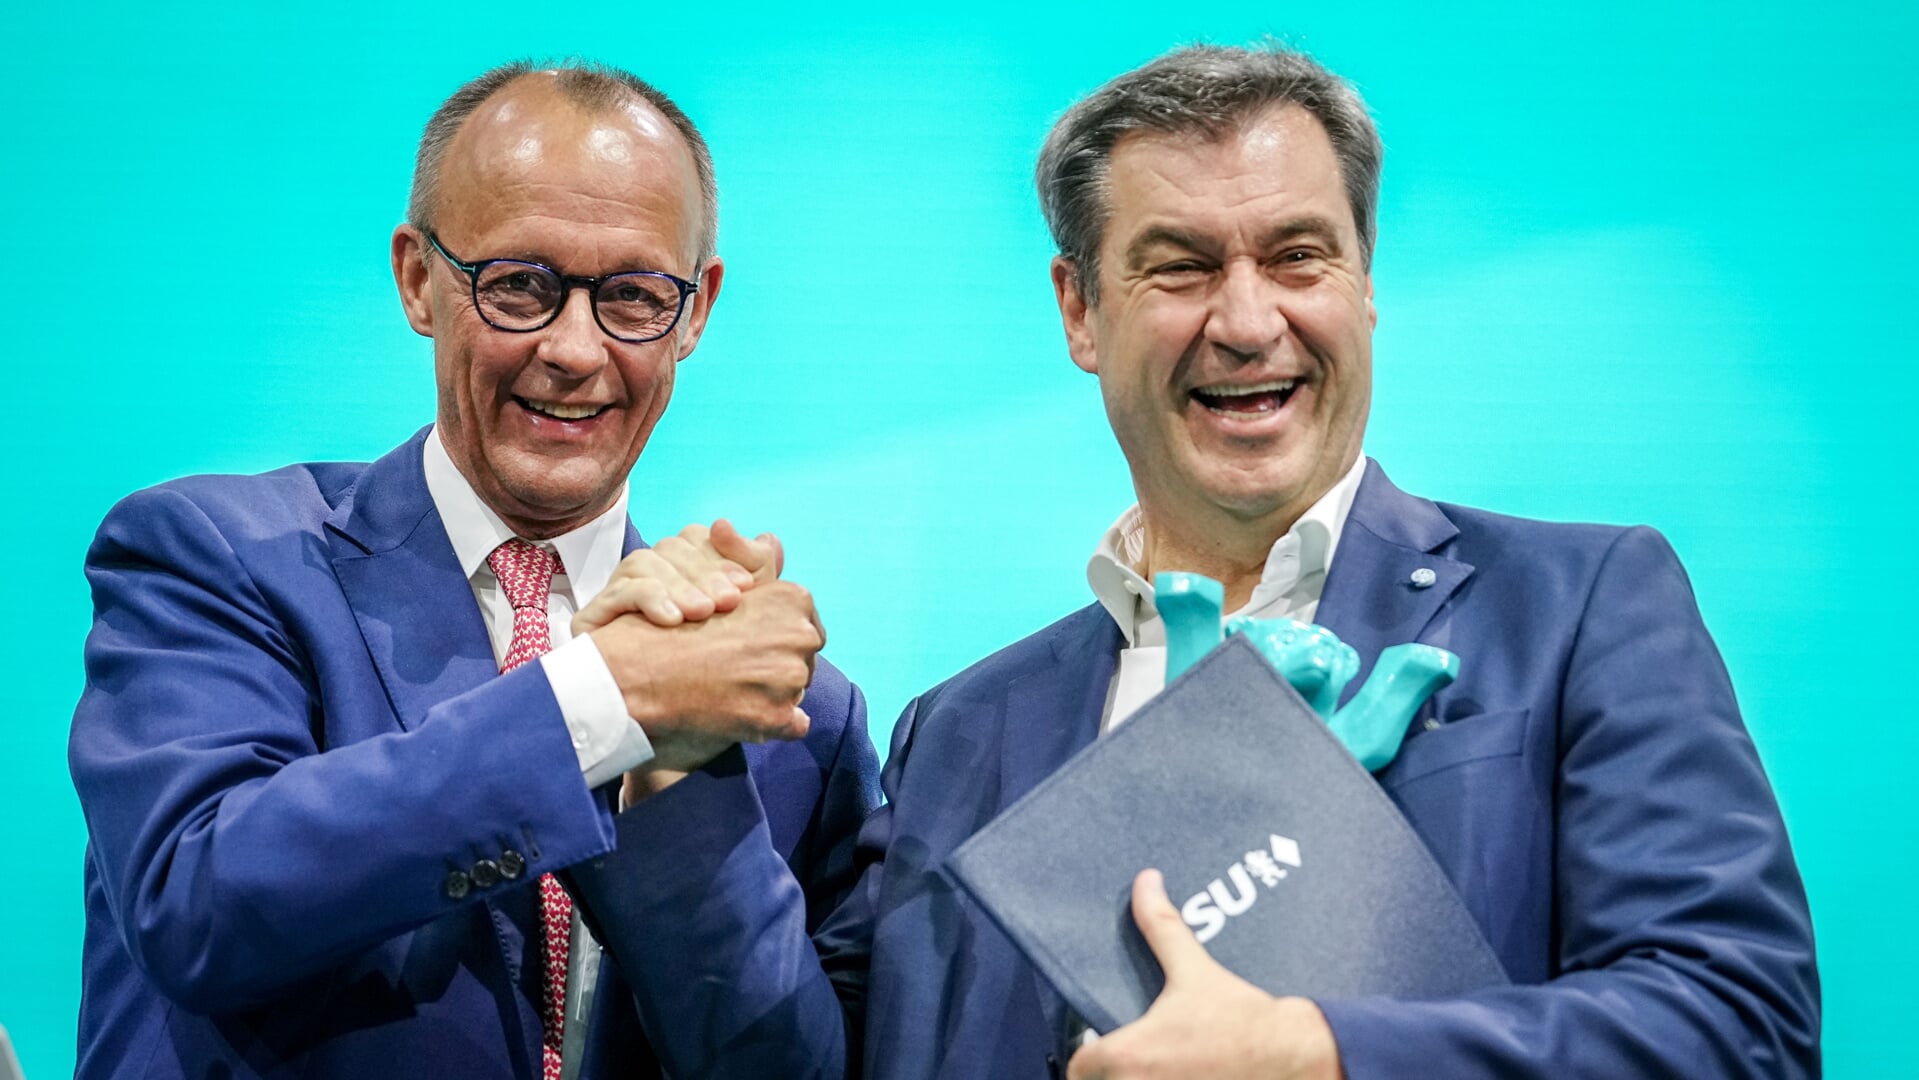 CDU-formand Friedrich Merz og CSU-chef Markus Söder er atter bedste venner, signaliserede de på kongressen. Foto: 